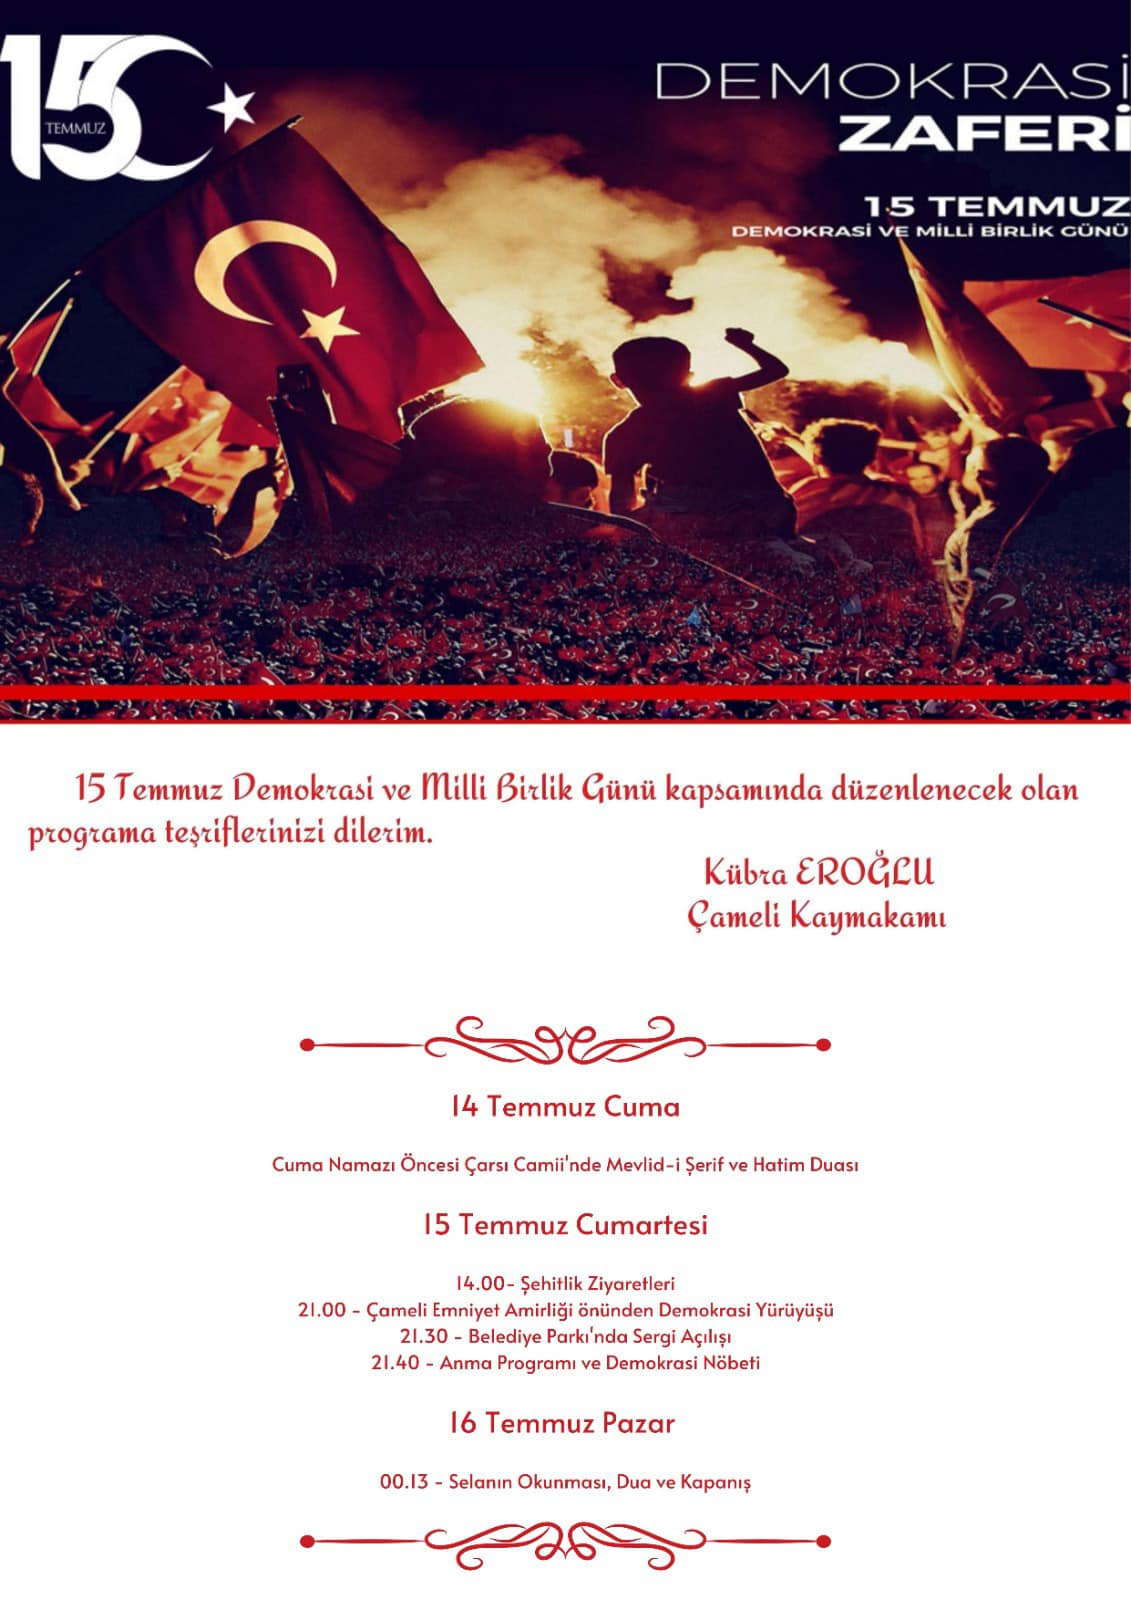 “15 Temmuz Demokrasi ve Milli Birlik Günü Anma Etkinlikleri Programı”na tüm hemşerilerimiz davetlidir.